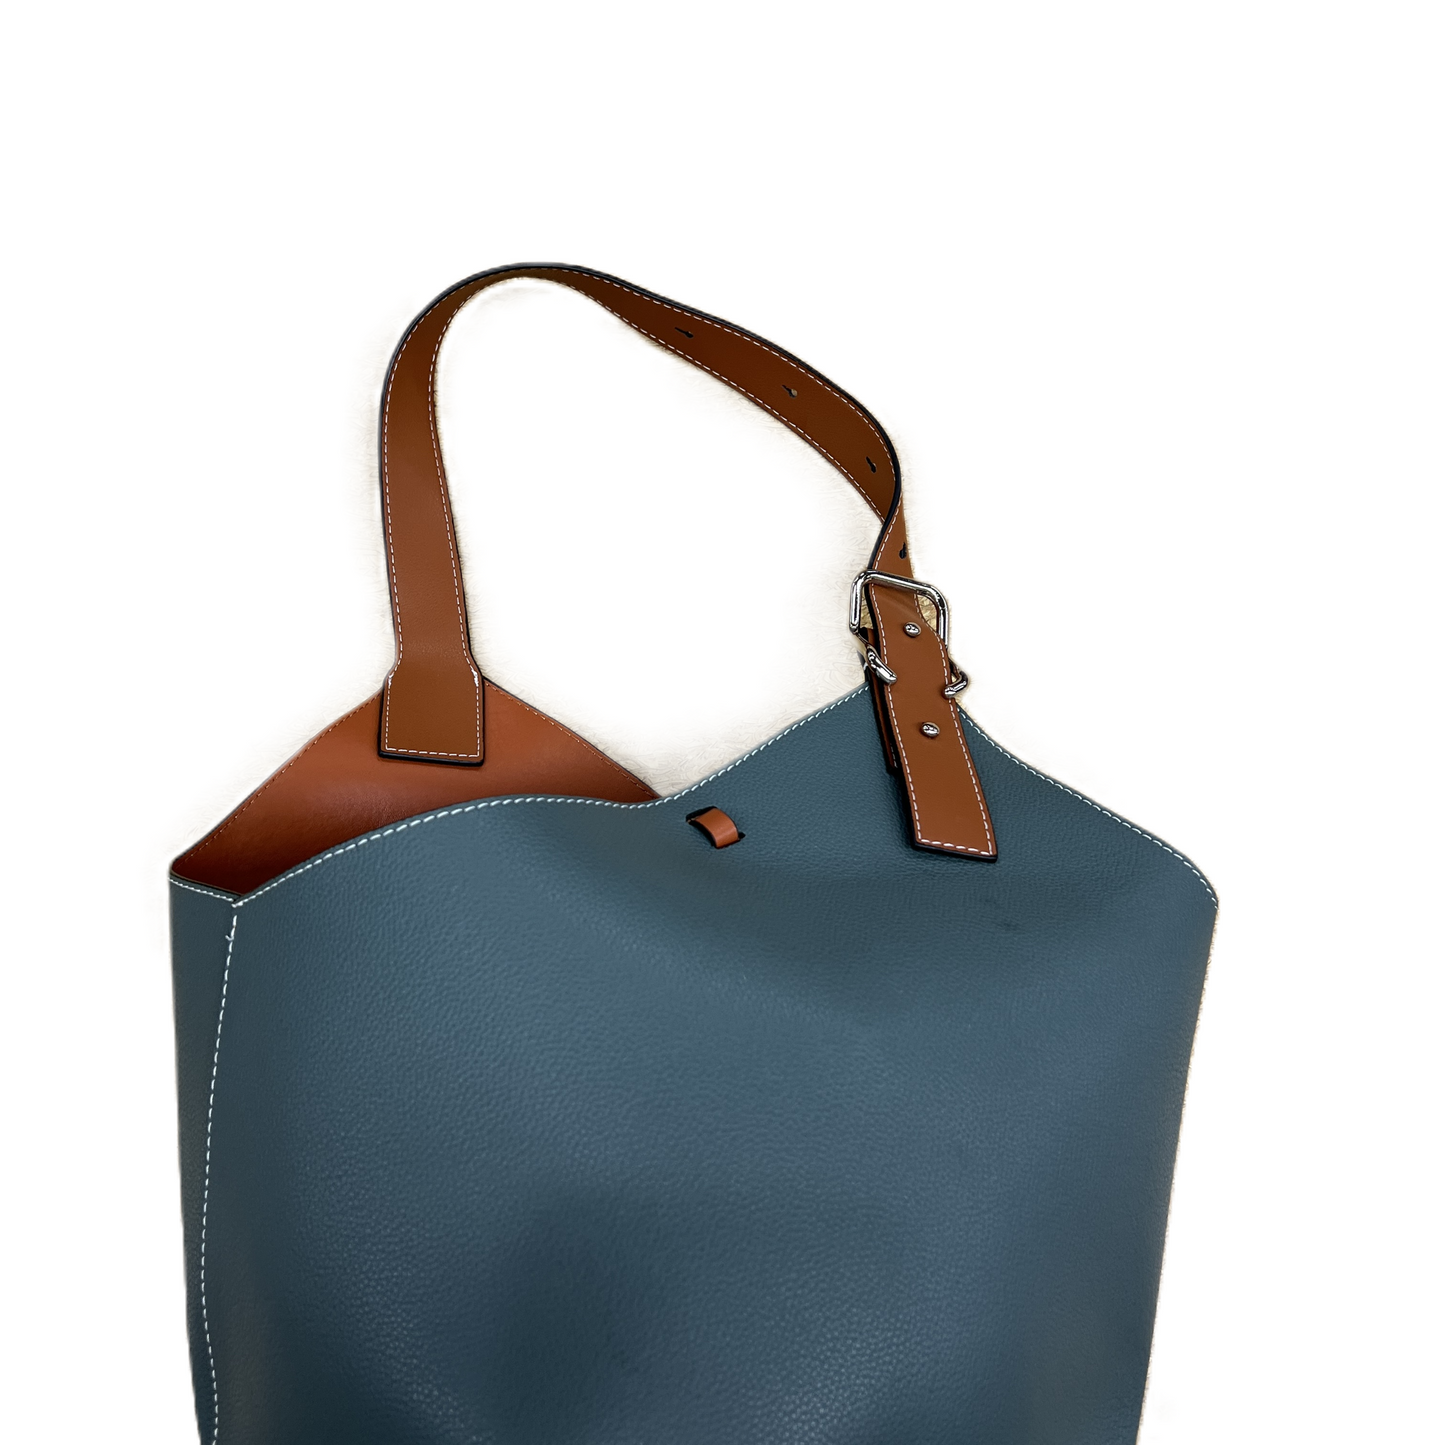 Handbag   Size: Large